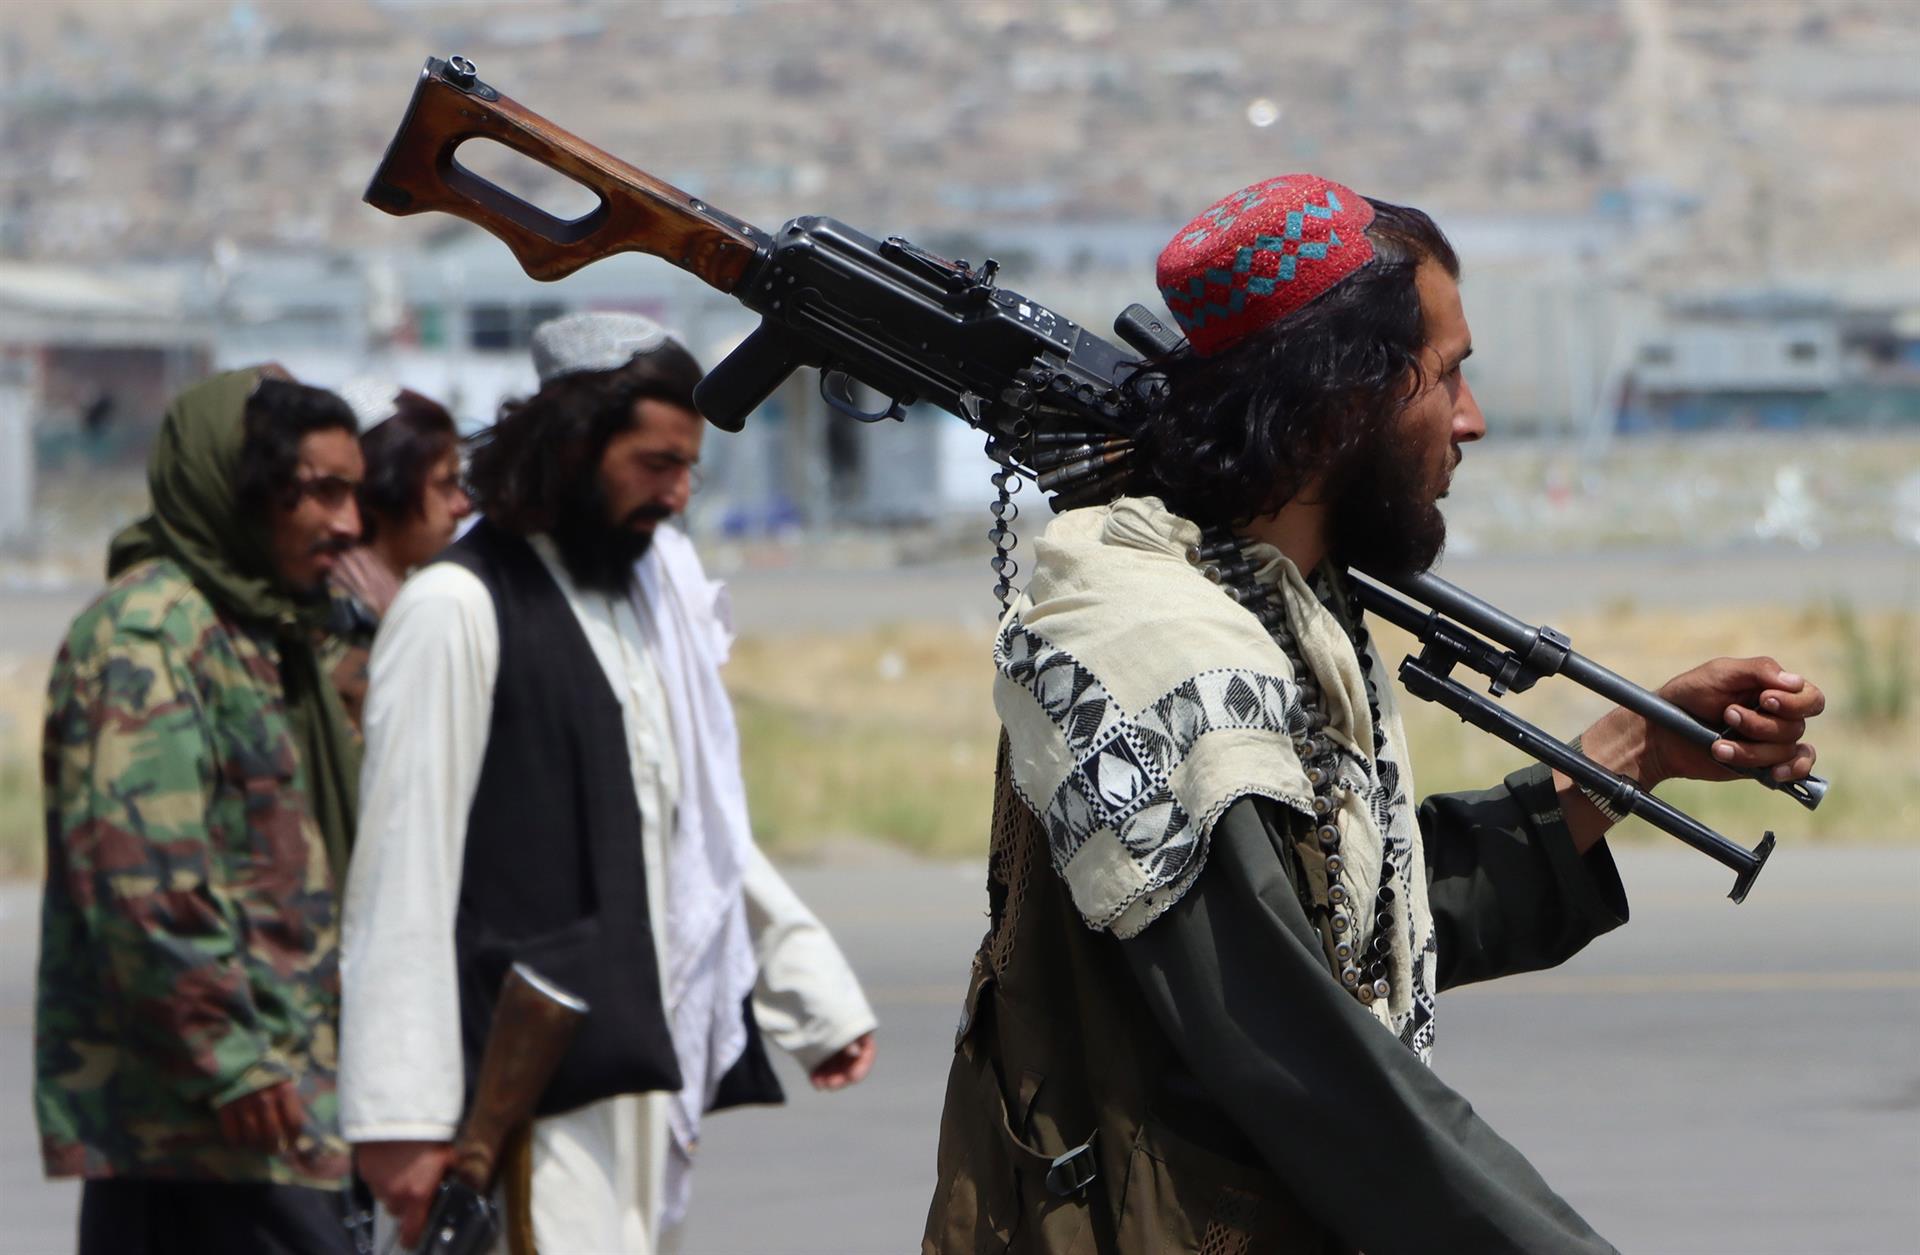 Al Qaeda celebra la "histórica" victoria talibán: "Es la liberación de los musulmanes de la inmundicia americana"